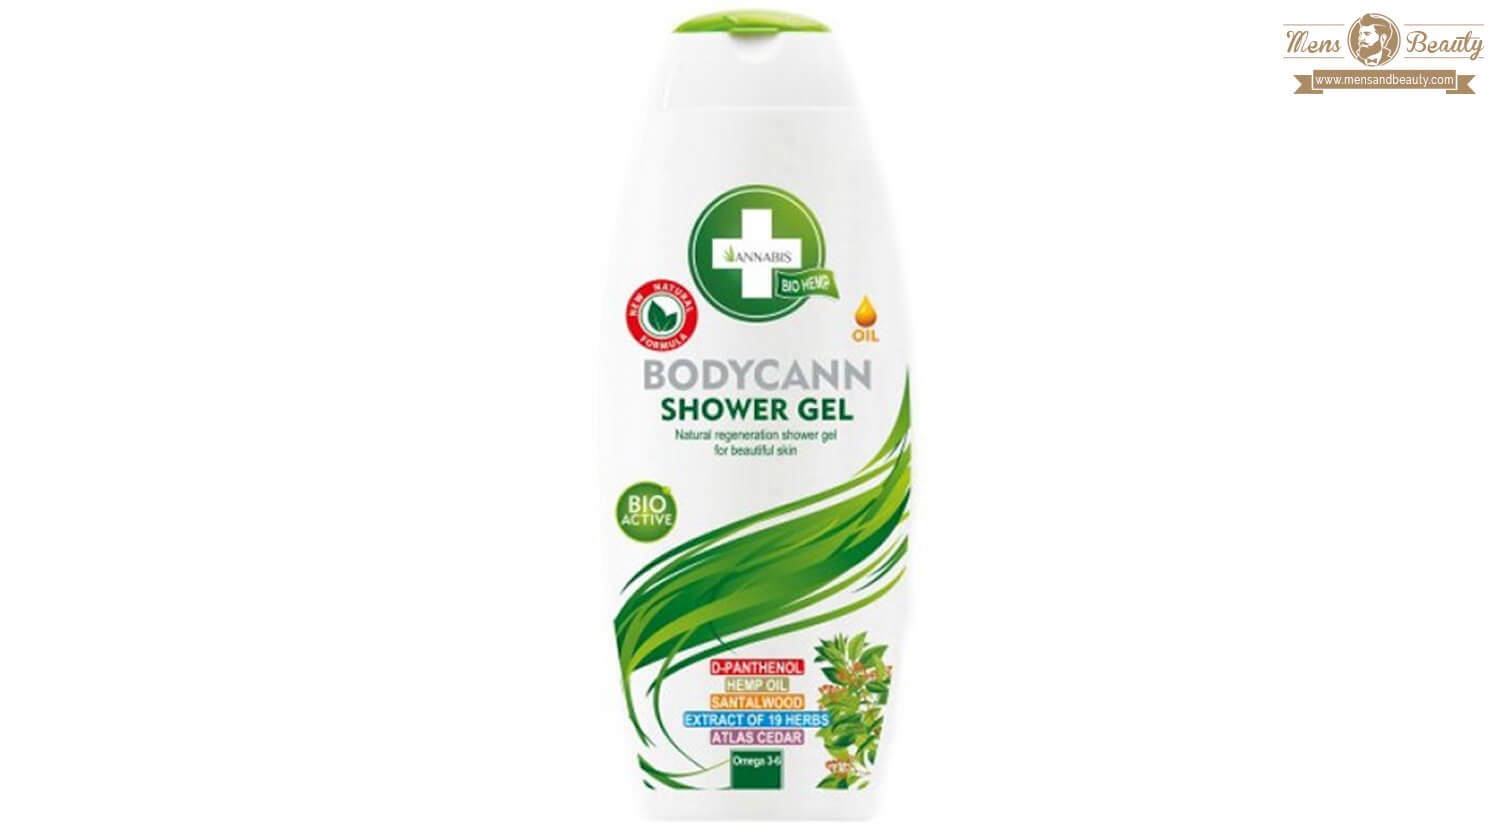 mejores productos cbd gel ducha cbd annabis bodycan showe gel